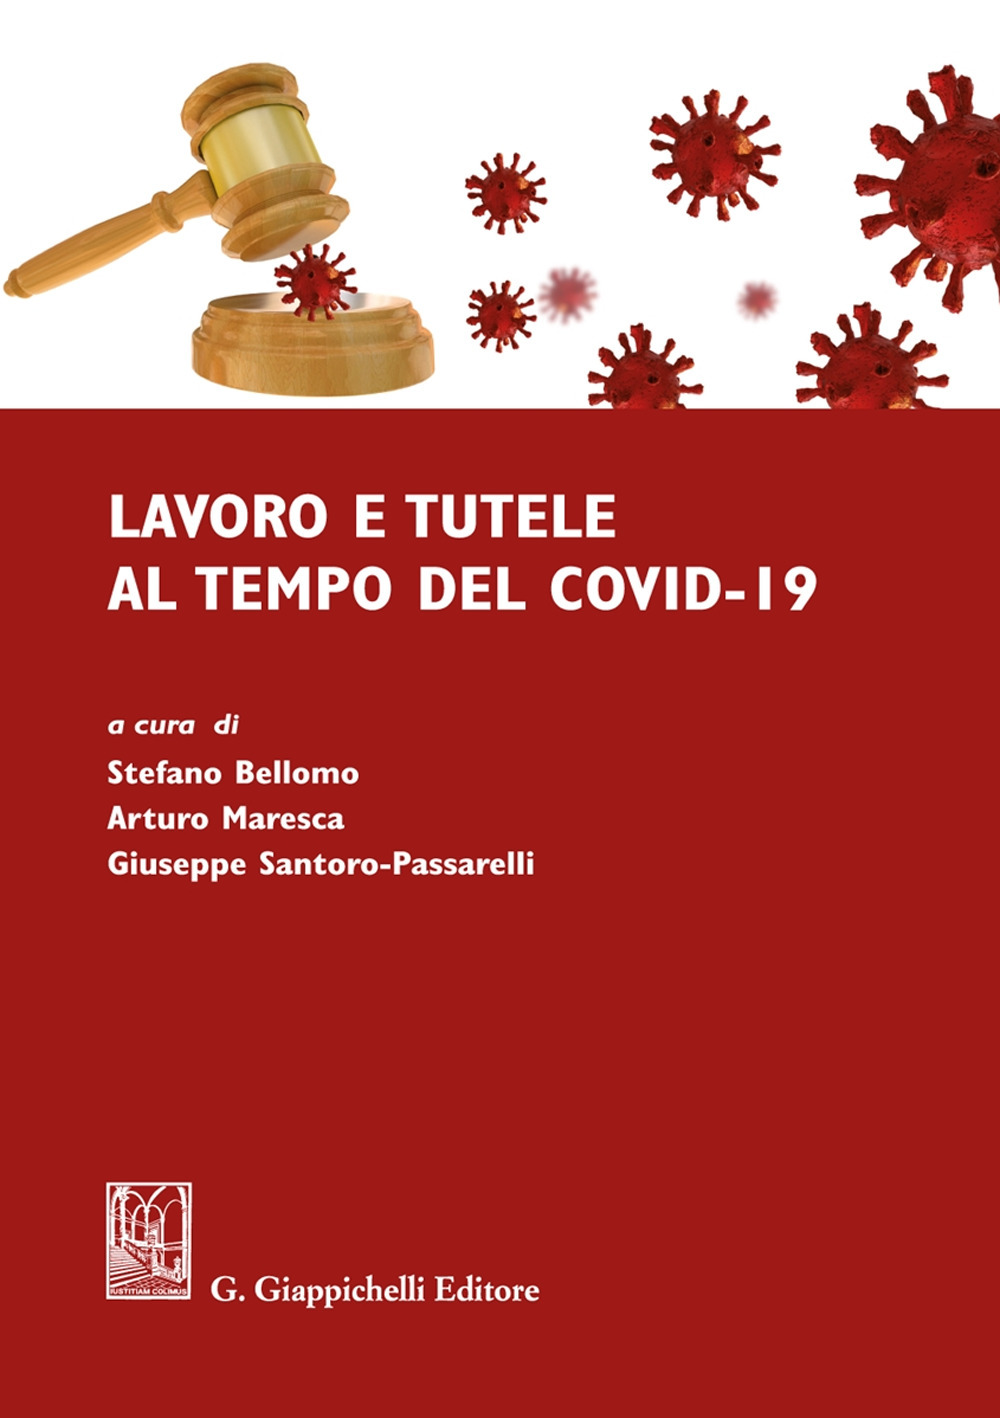 Lavoro e tutele al tempo del Covid-19